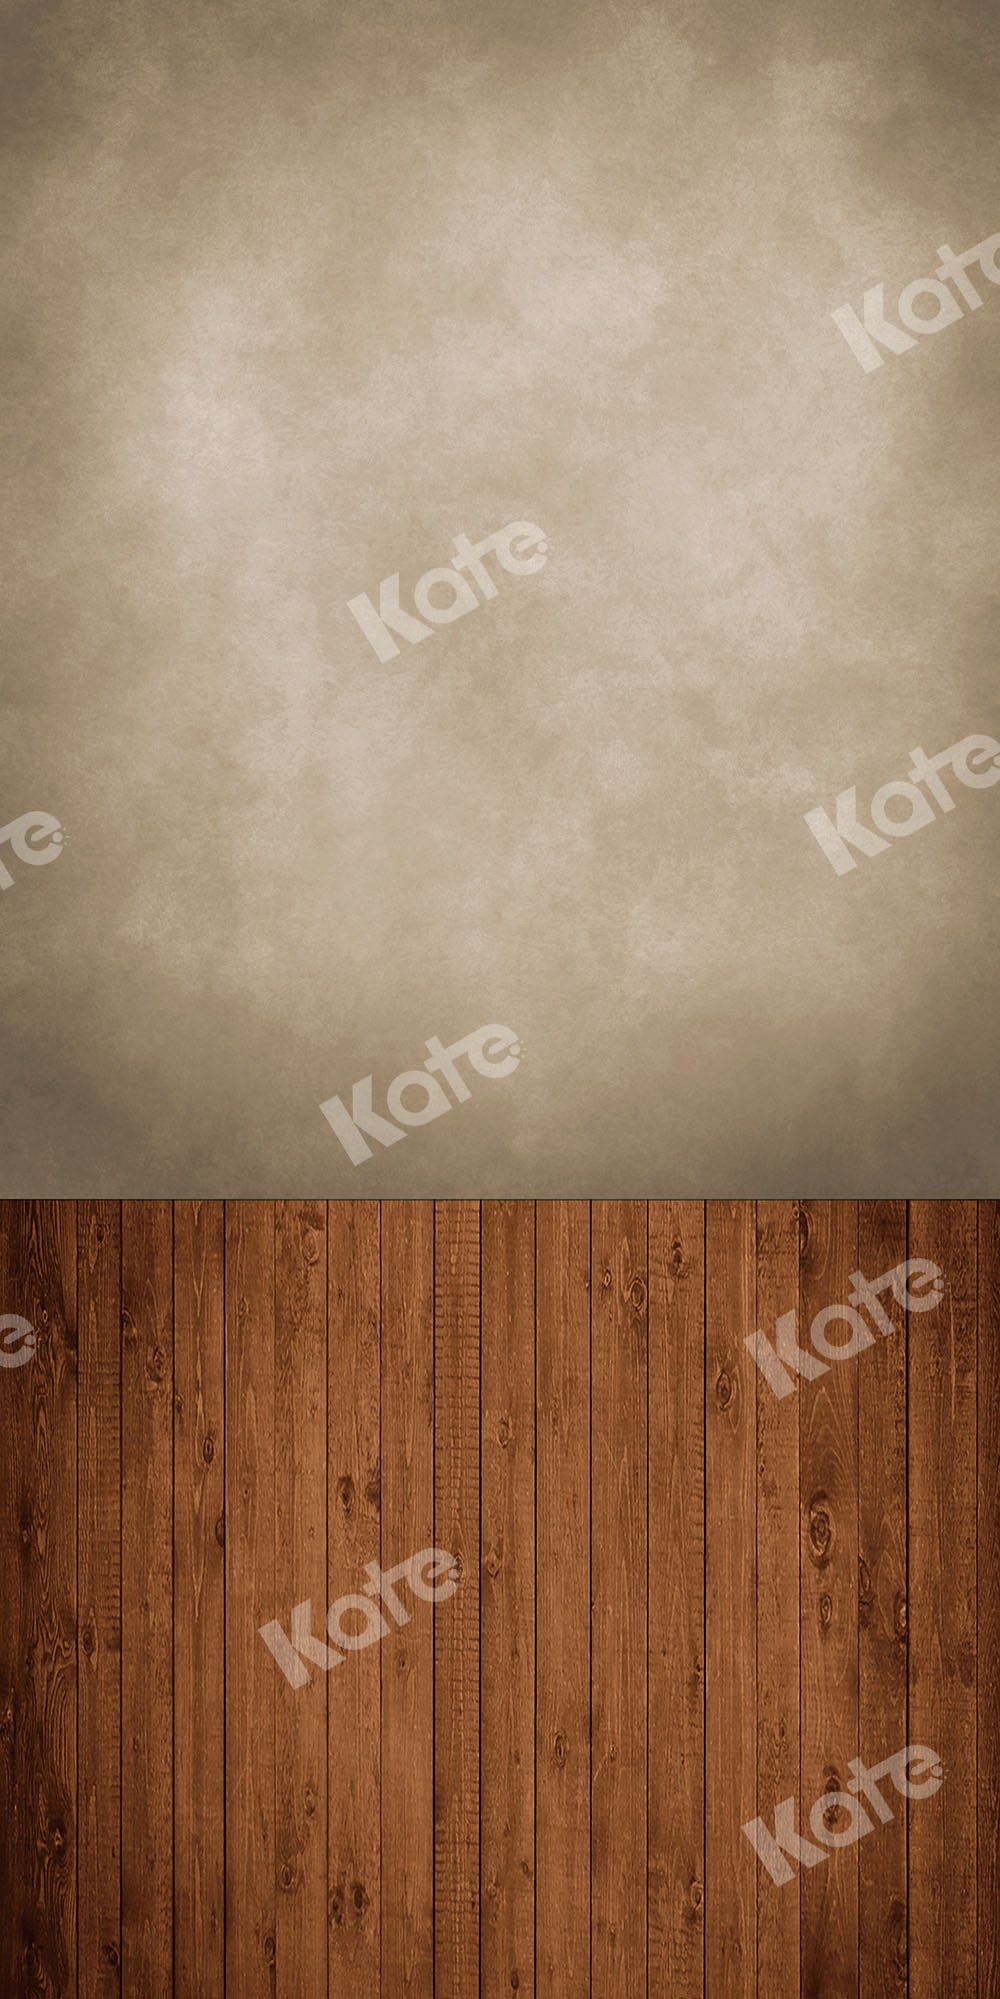 Kate 茶色の木製マット背景セットと抽象的なシャンパンの壁